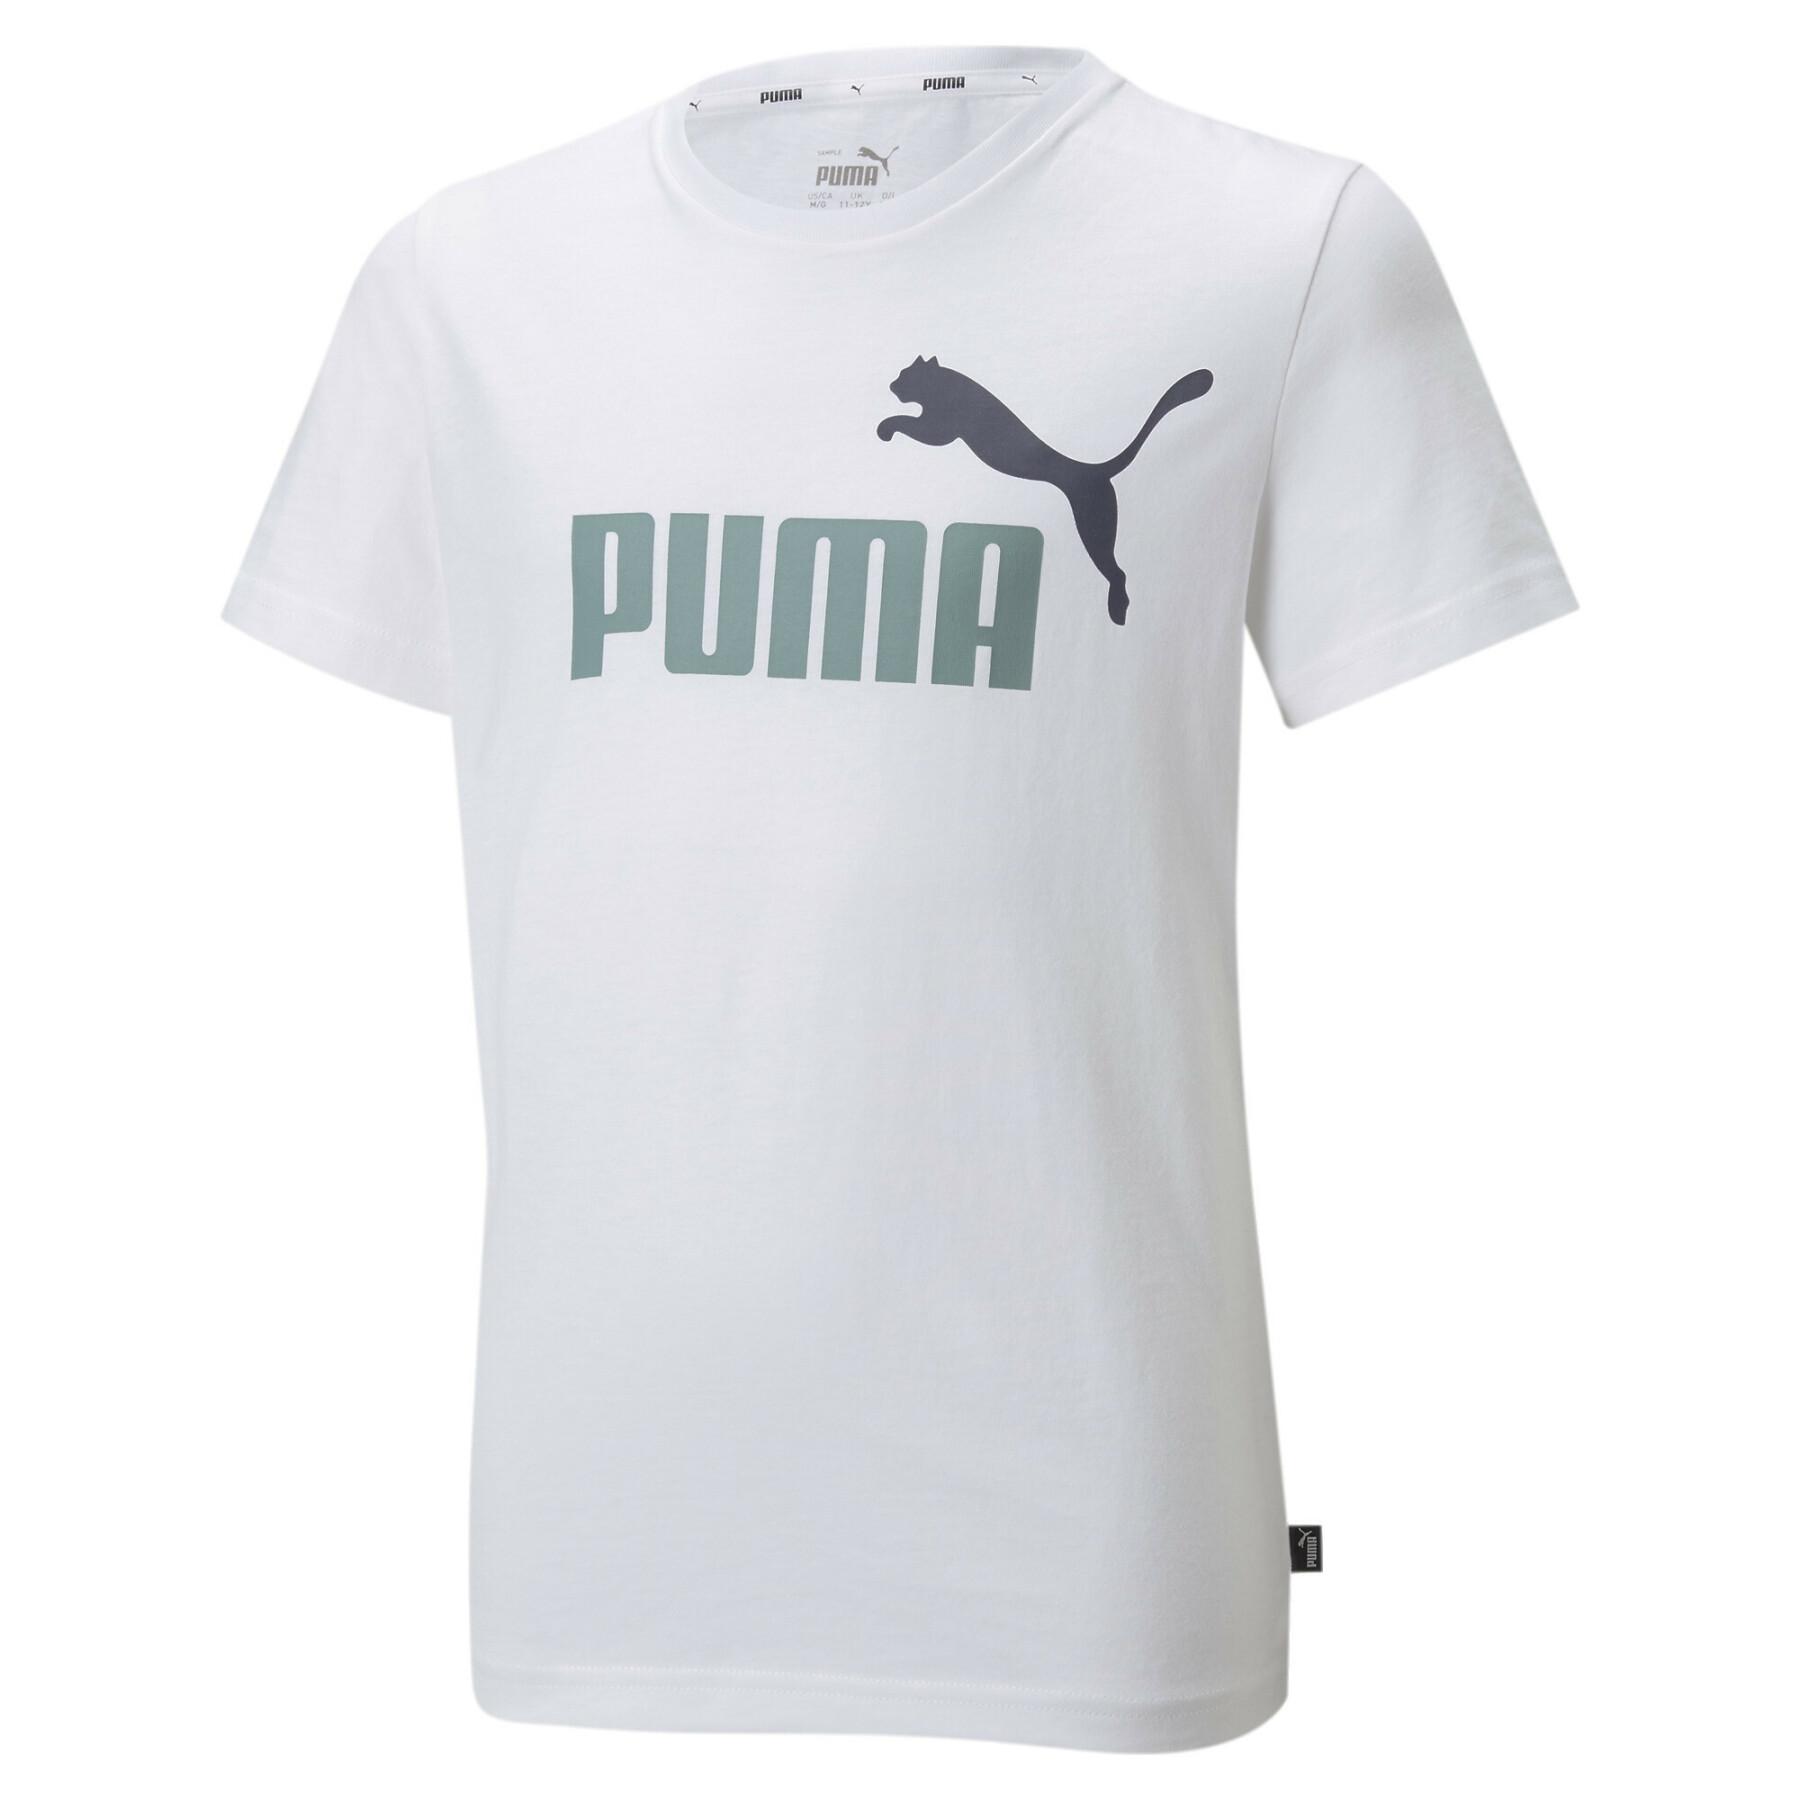 Camiseta para niños Puma Essentiel Logo